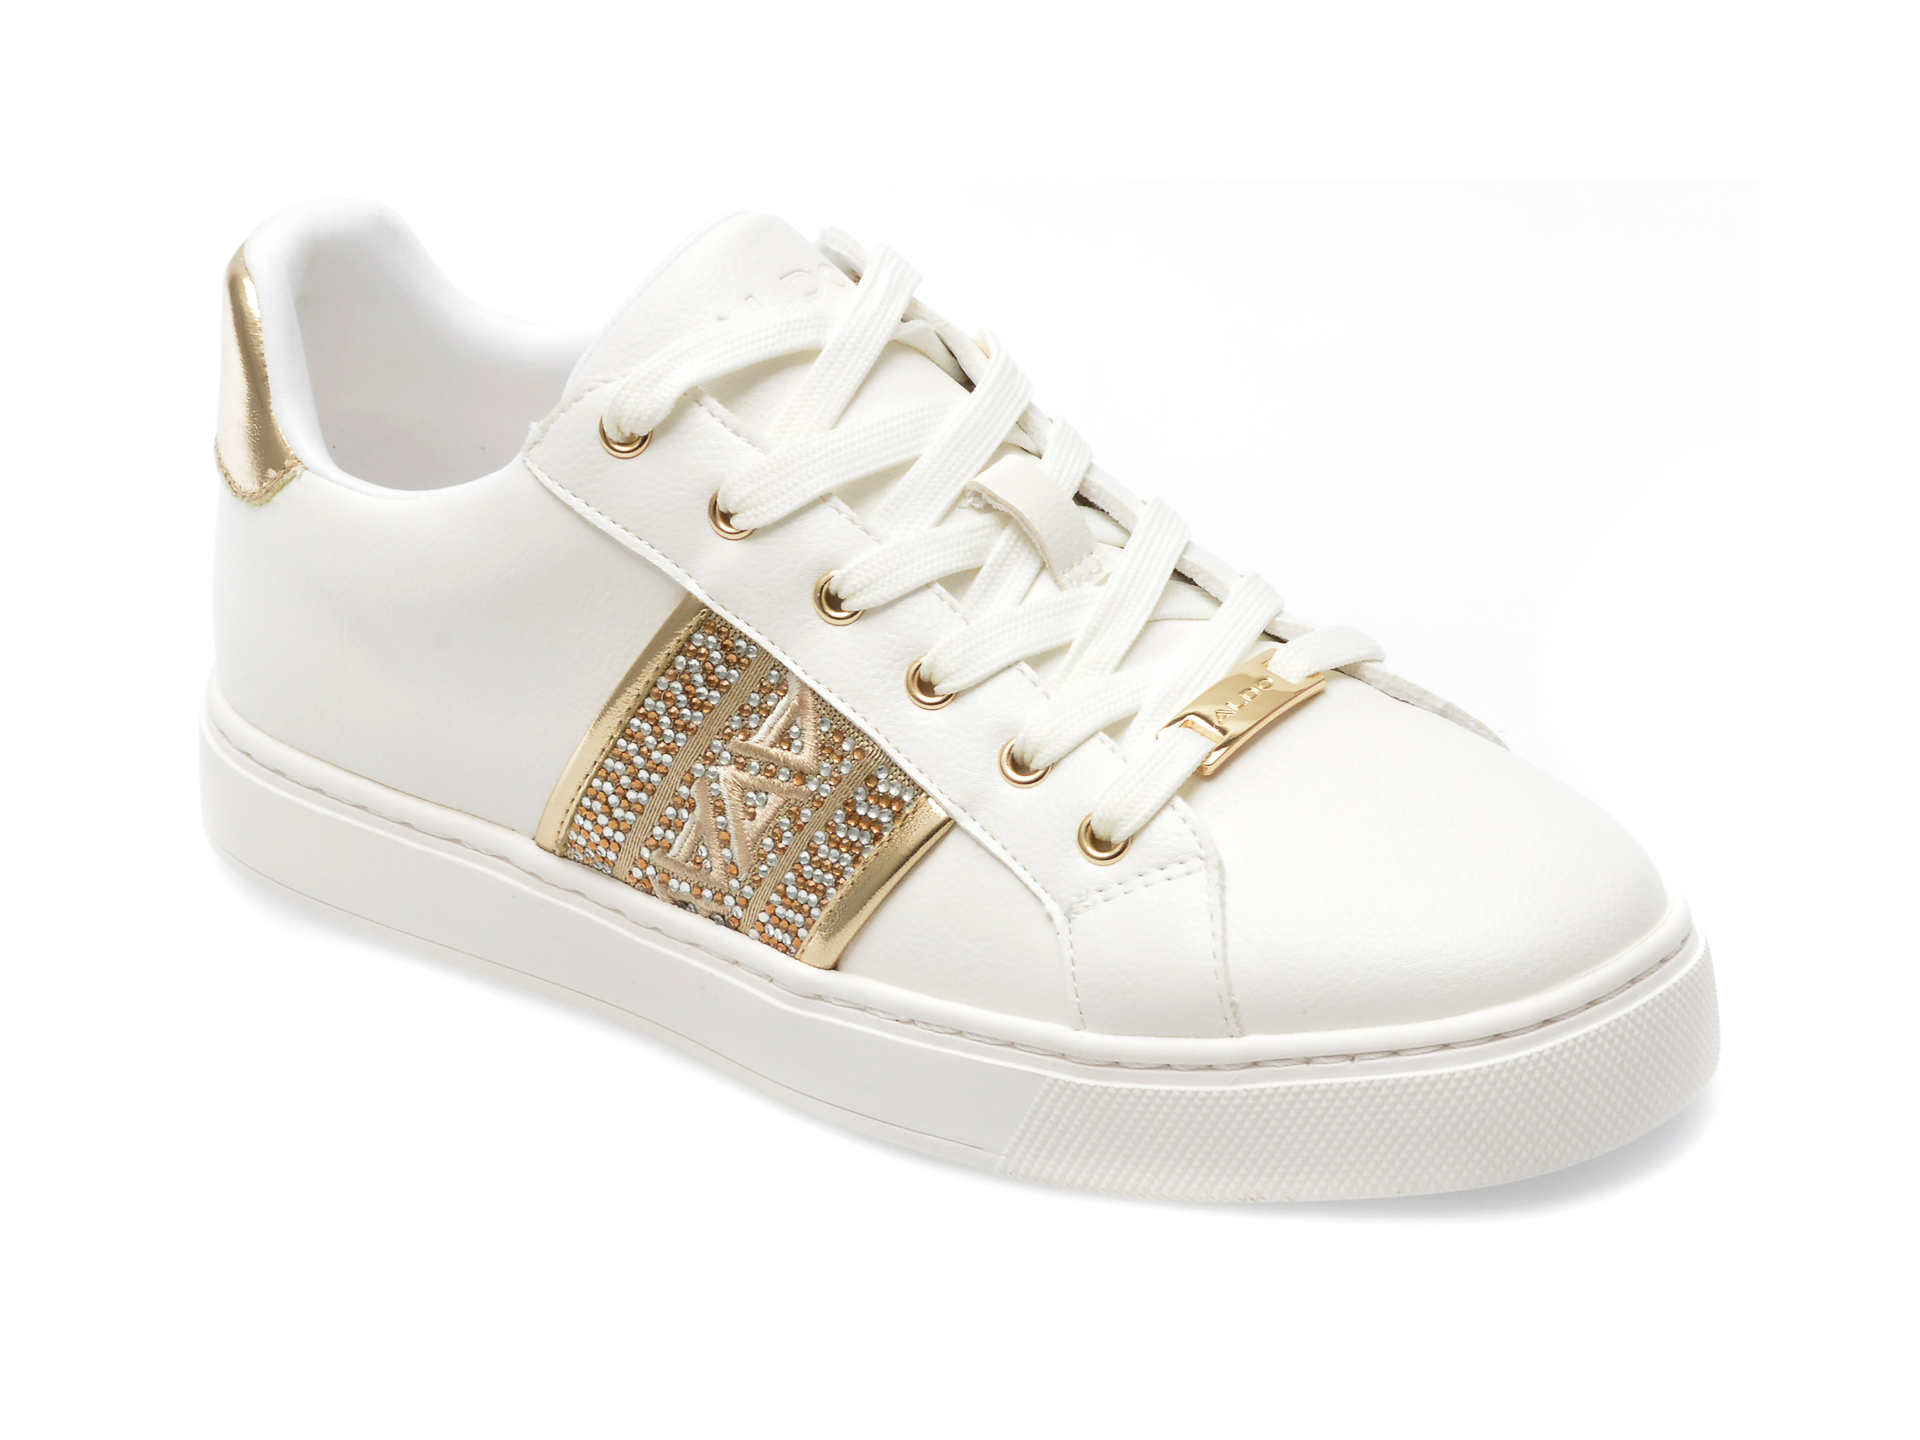 Pantofi ALDO aurii, PALAZZI711, din piele ecologica